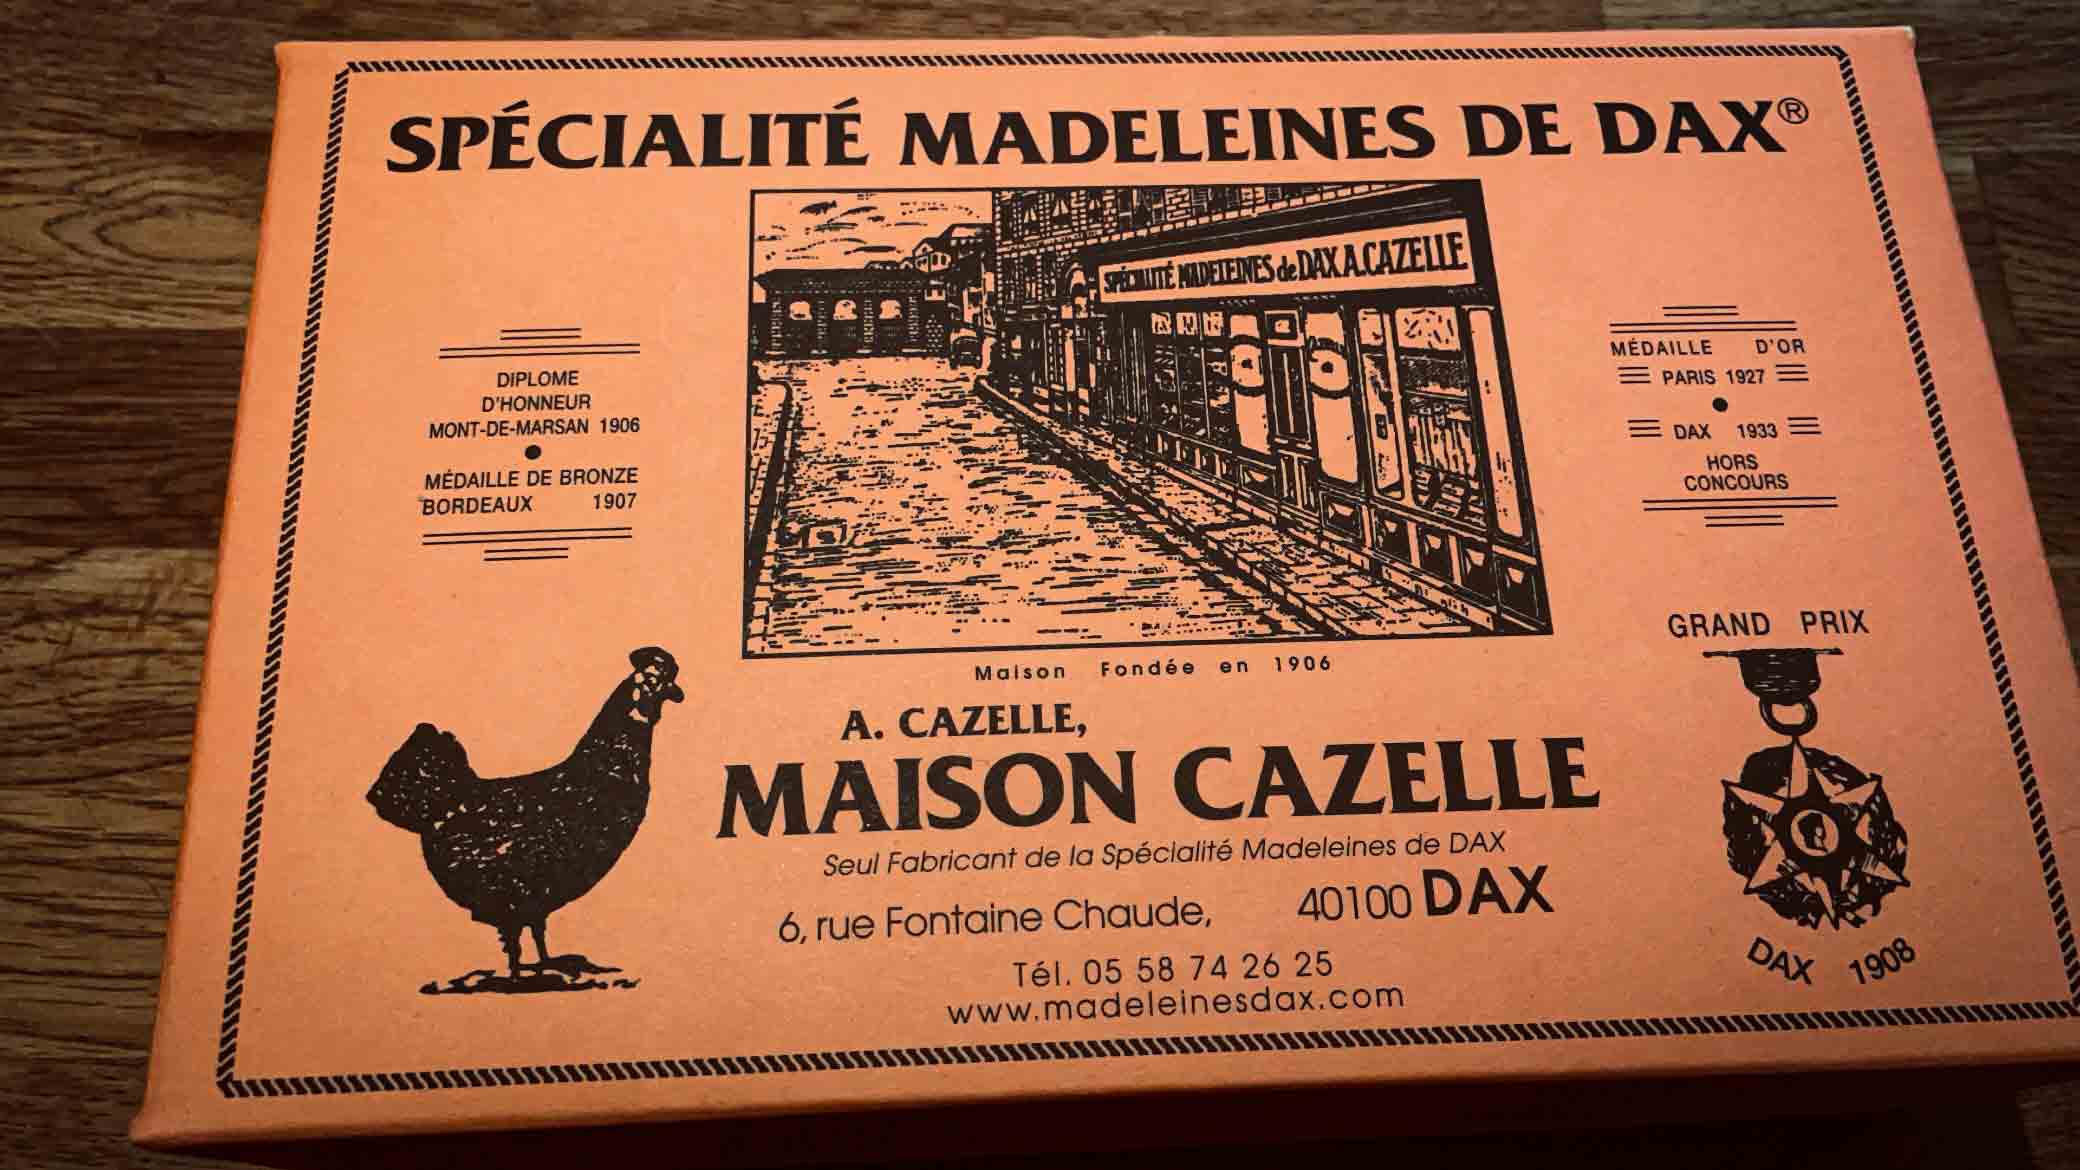 Madeleine de Dax Maison Cazelle